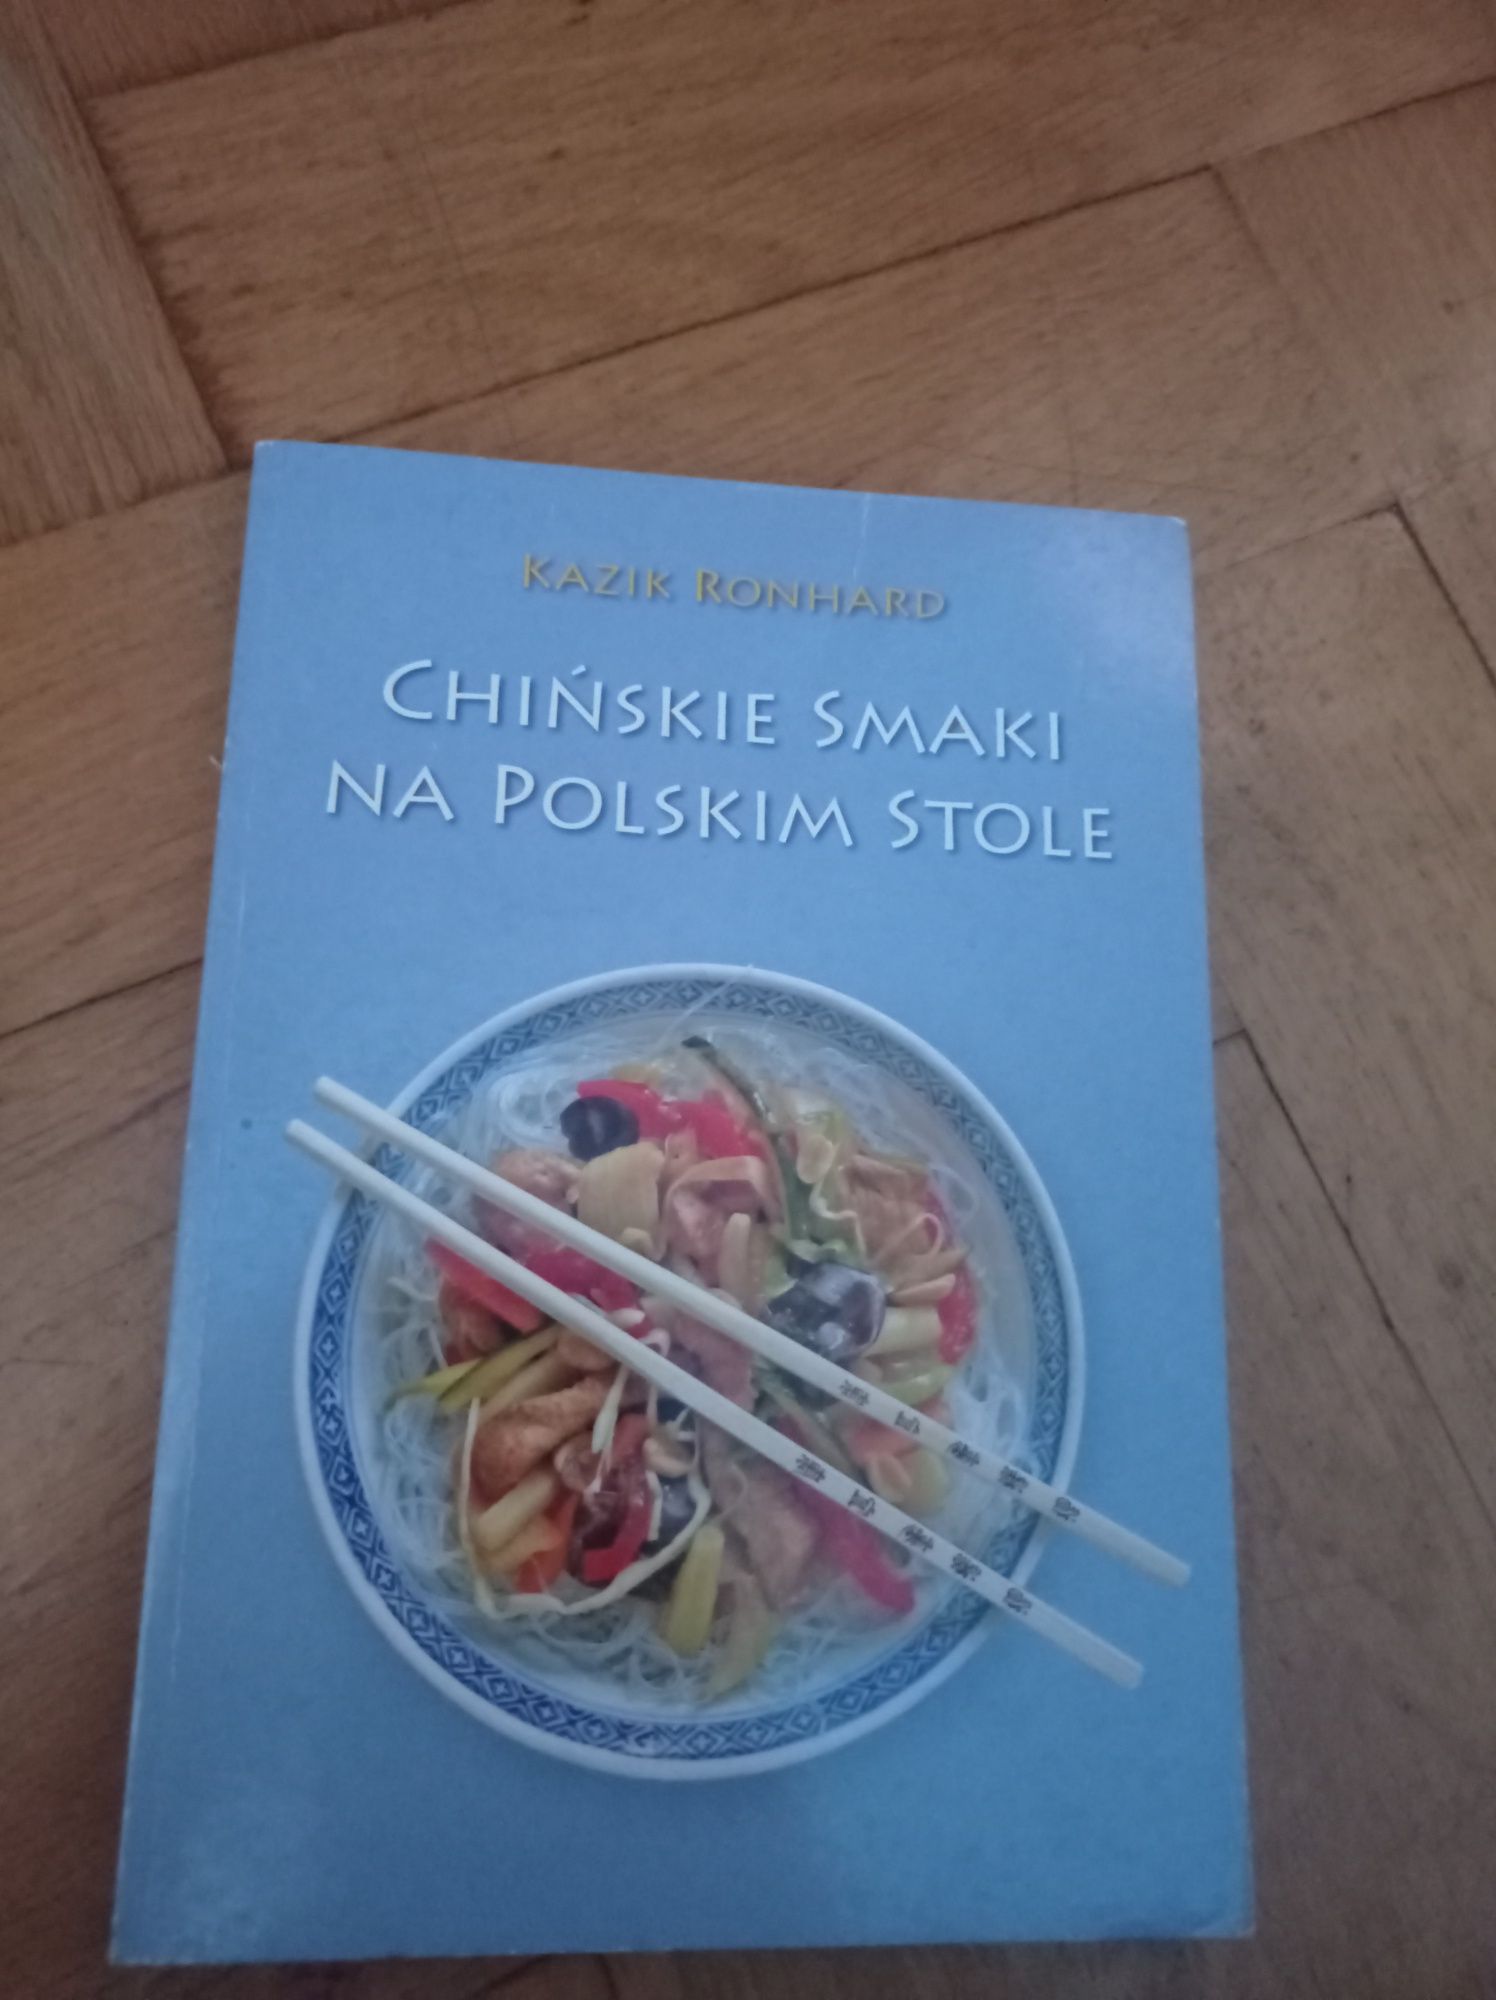 Kazik Ronhard, Chińskie smaki na polskim stole